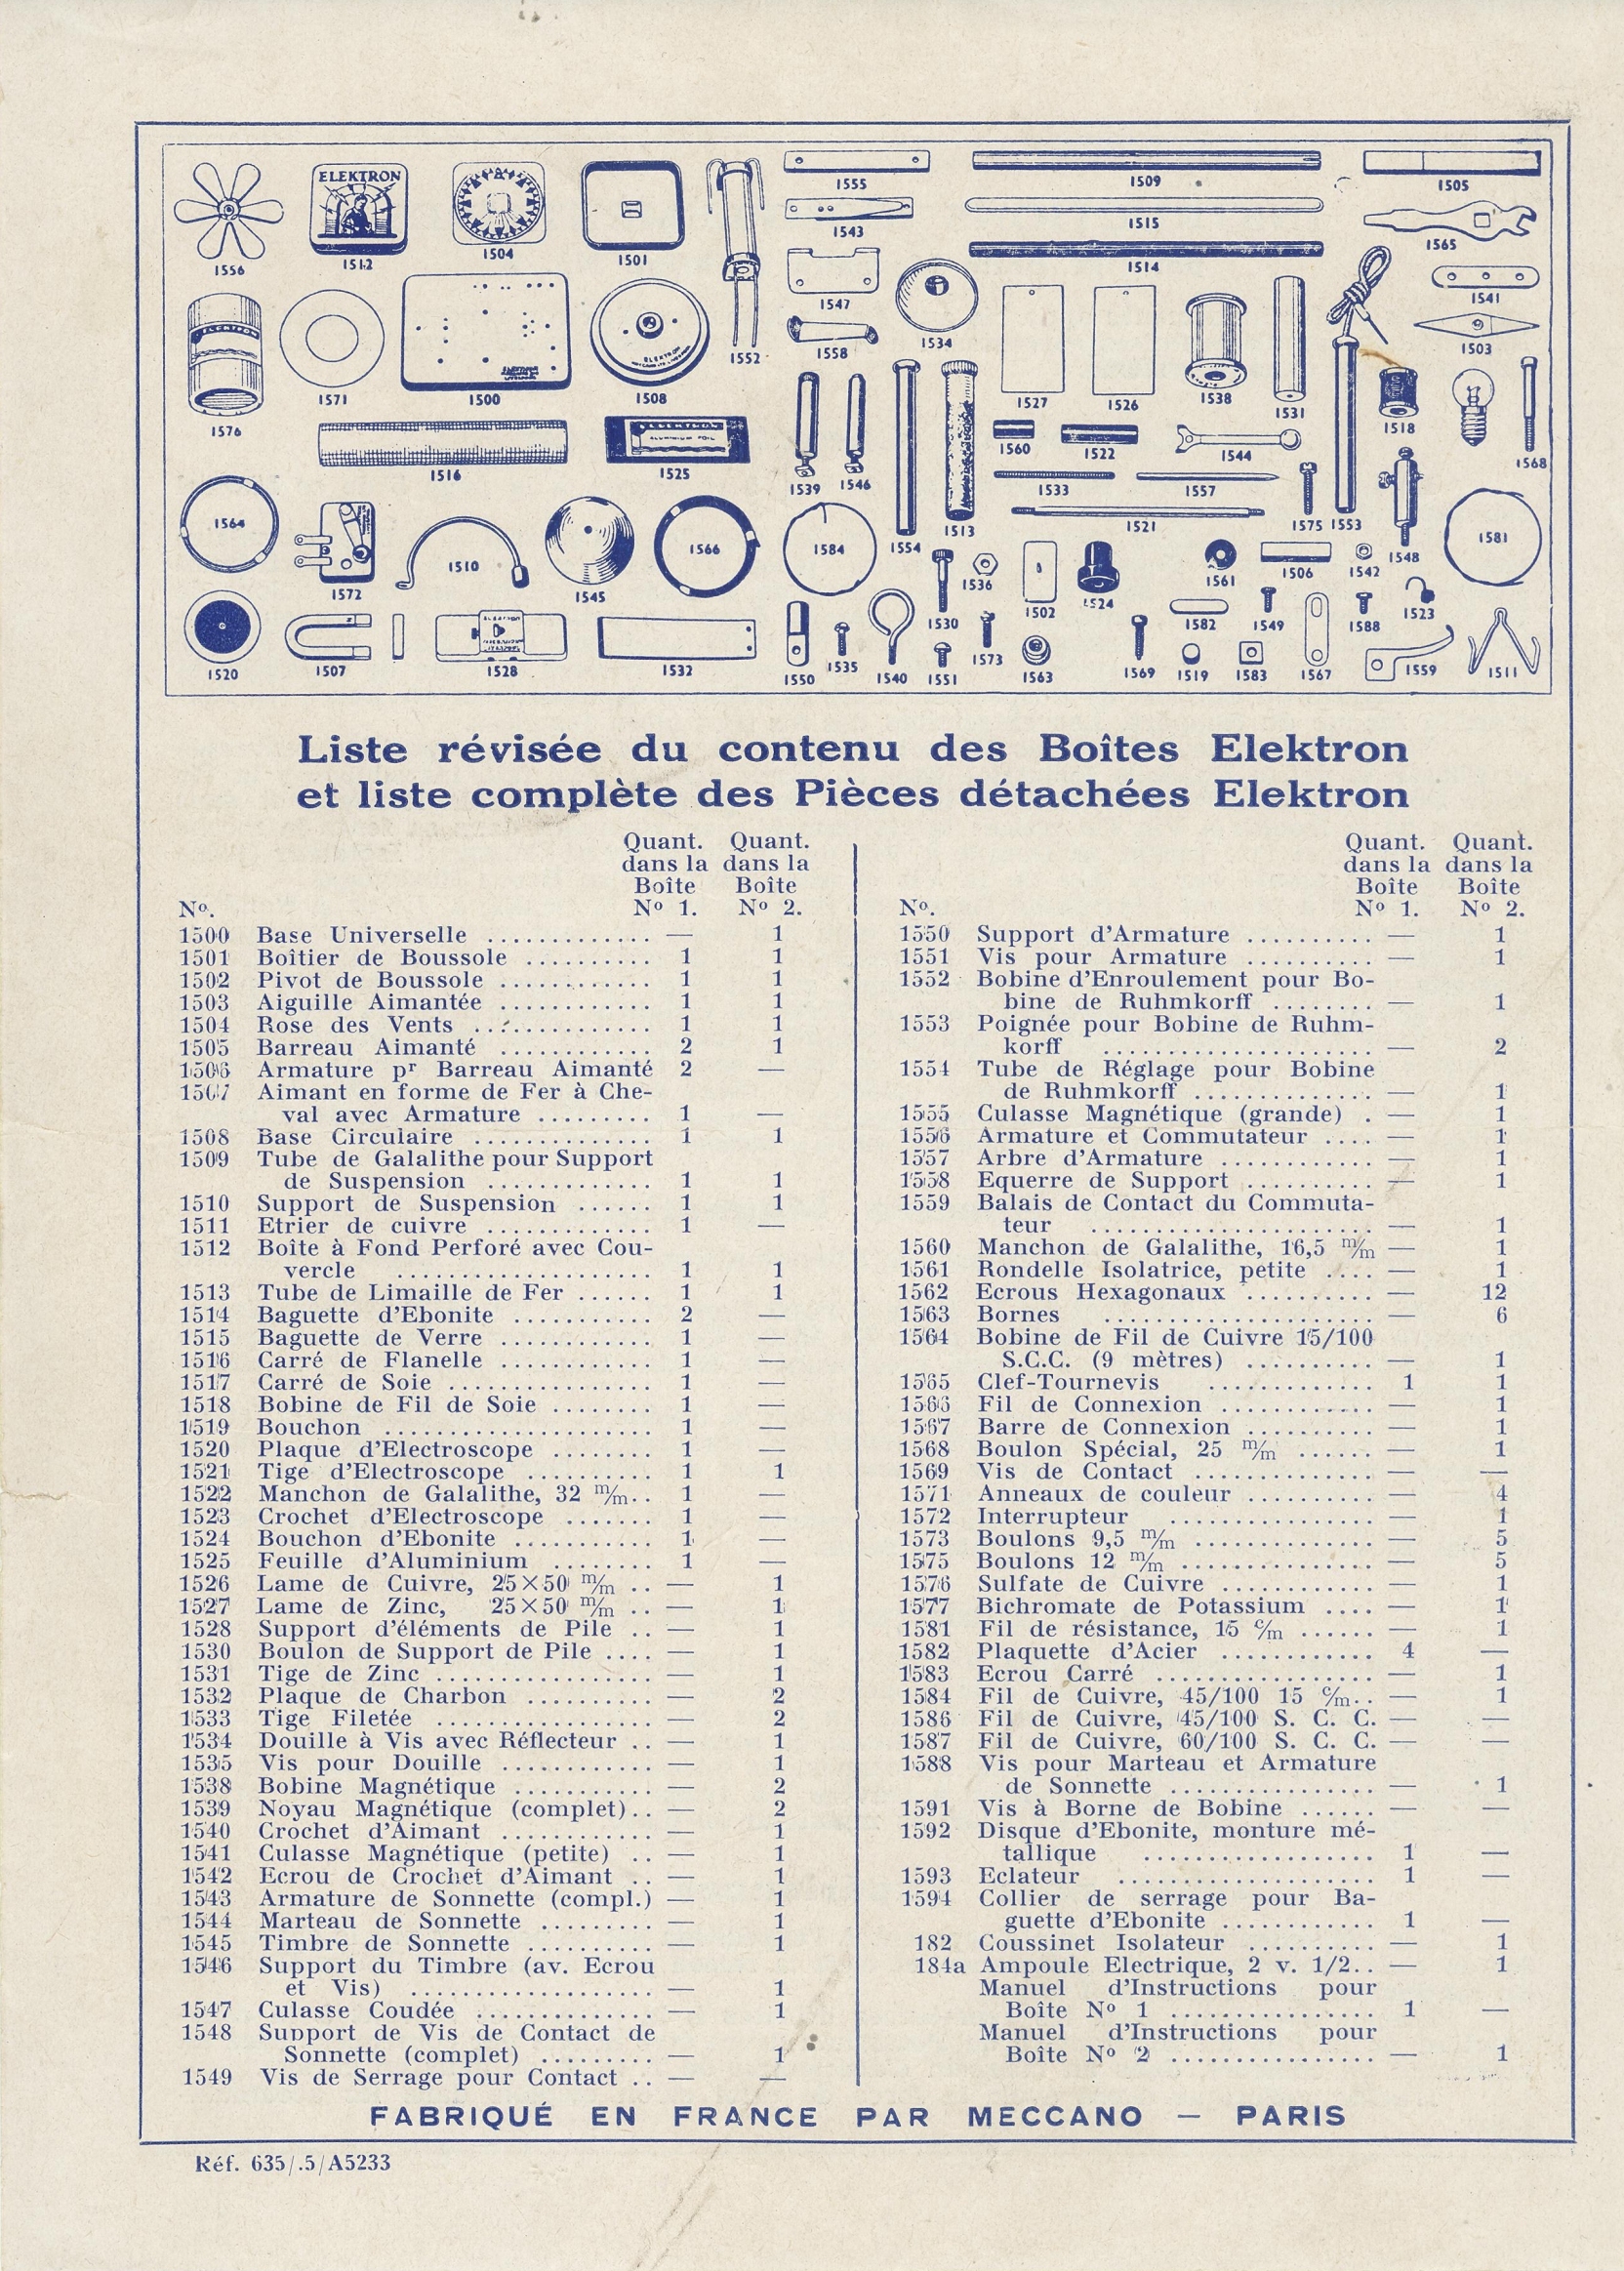 Liste des pièces et contenu des boîtes (juin 1935)